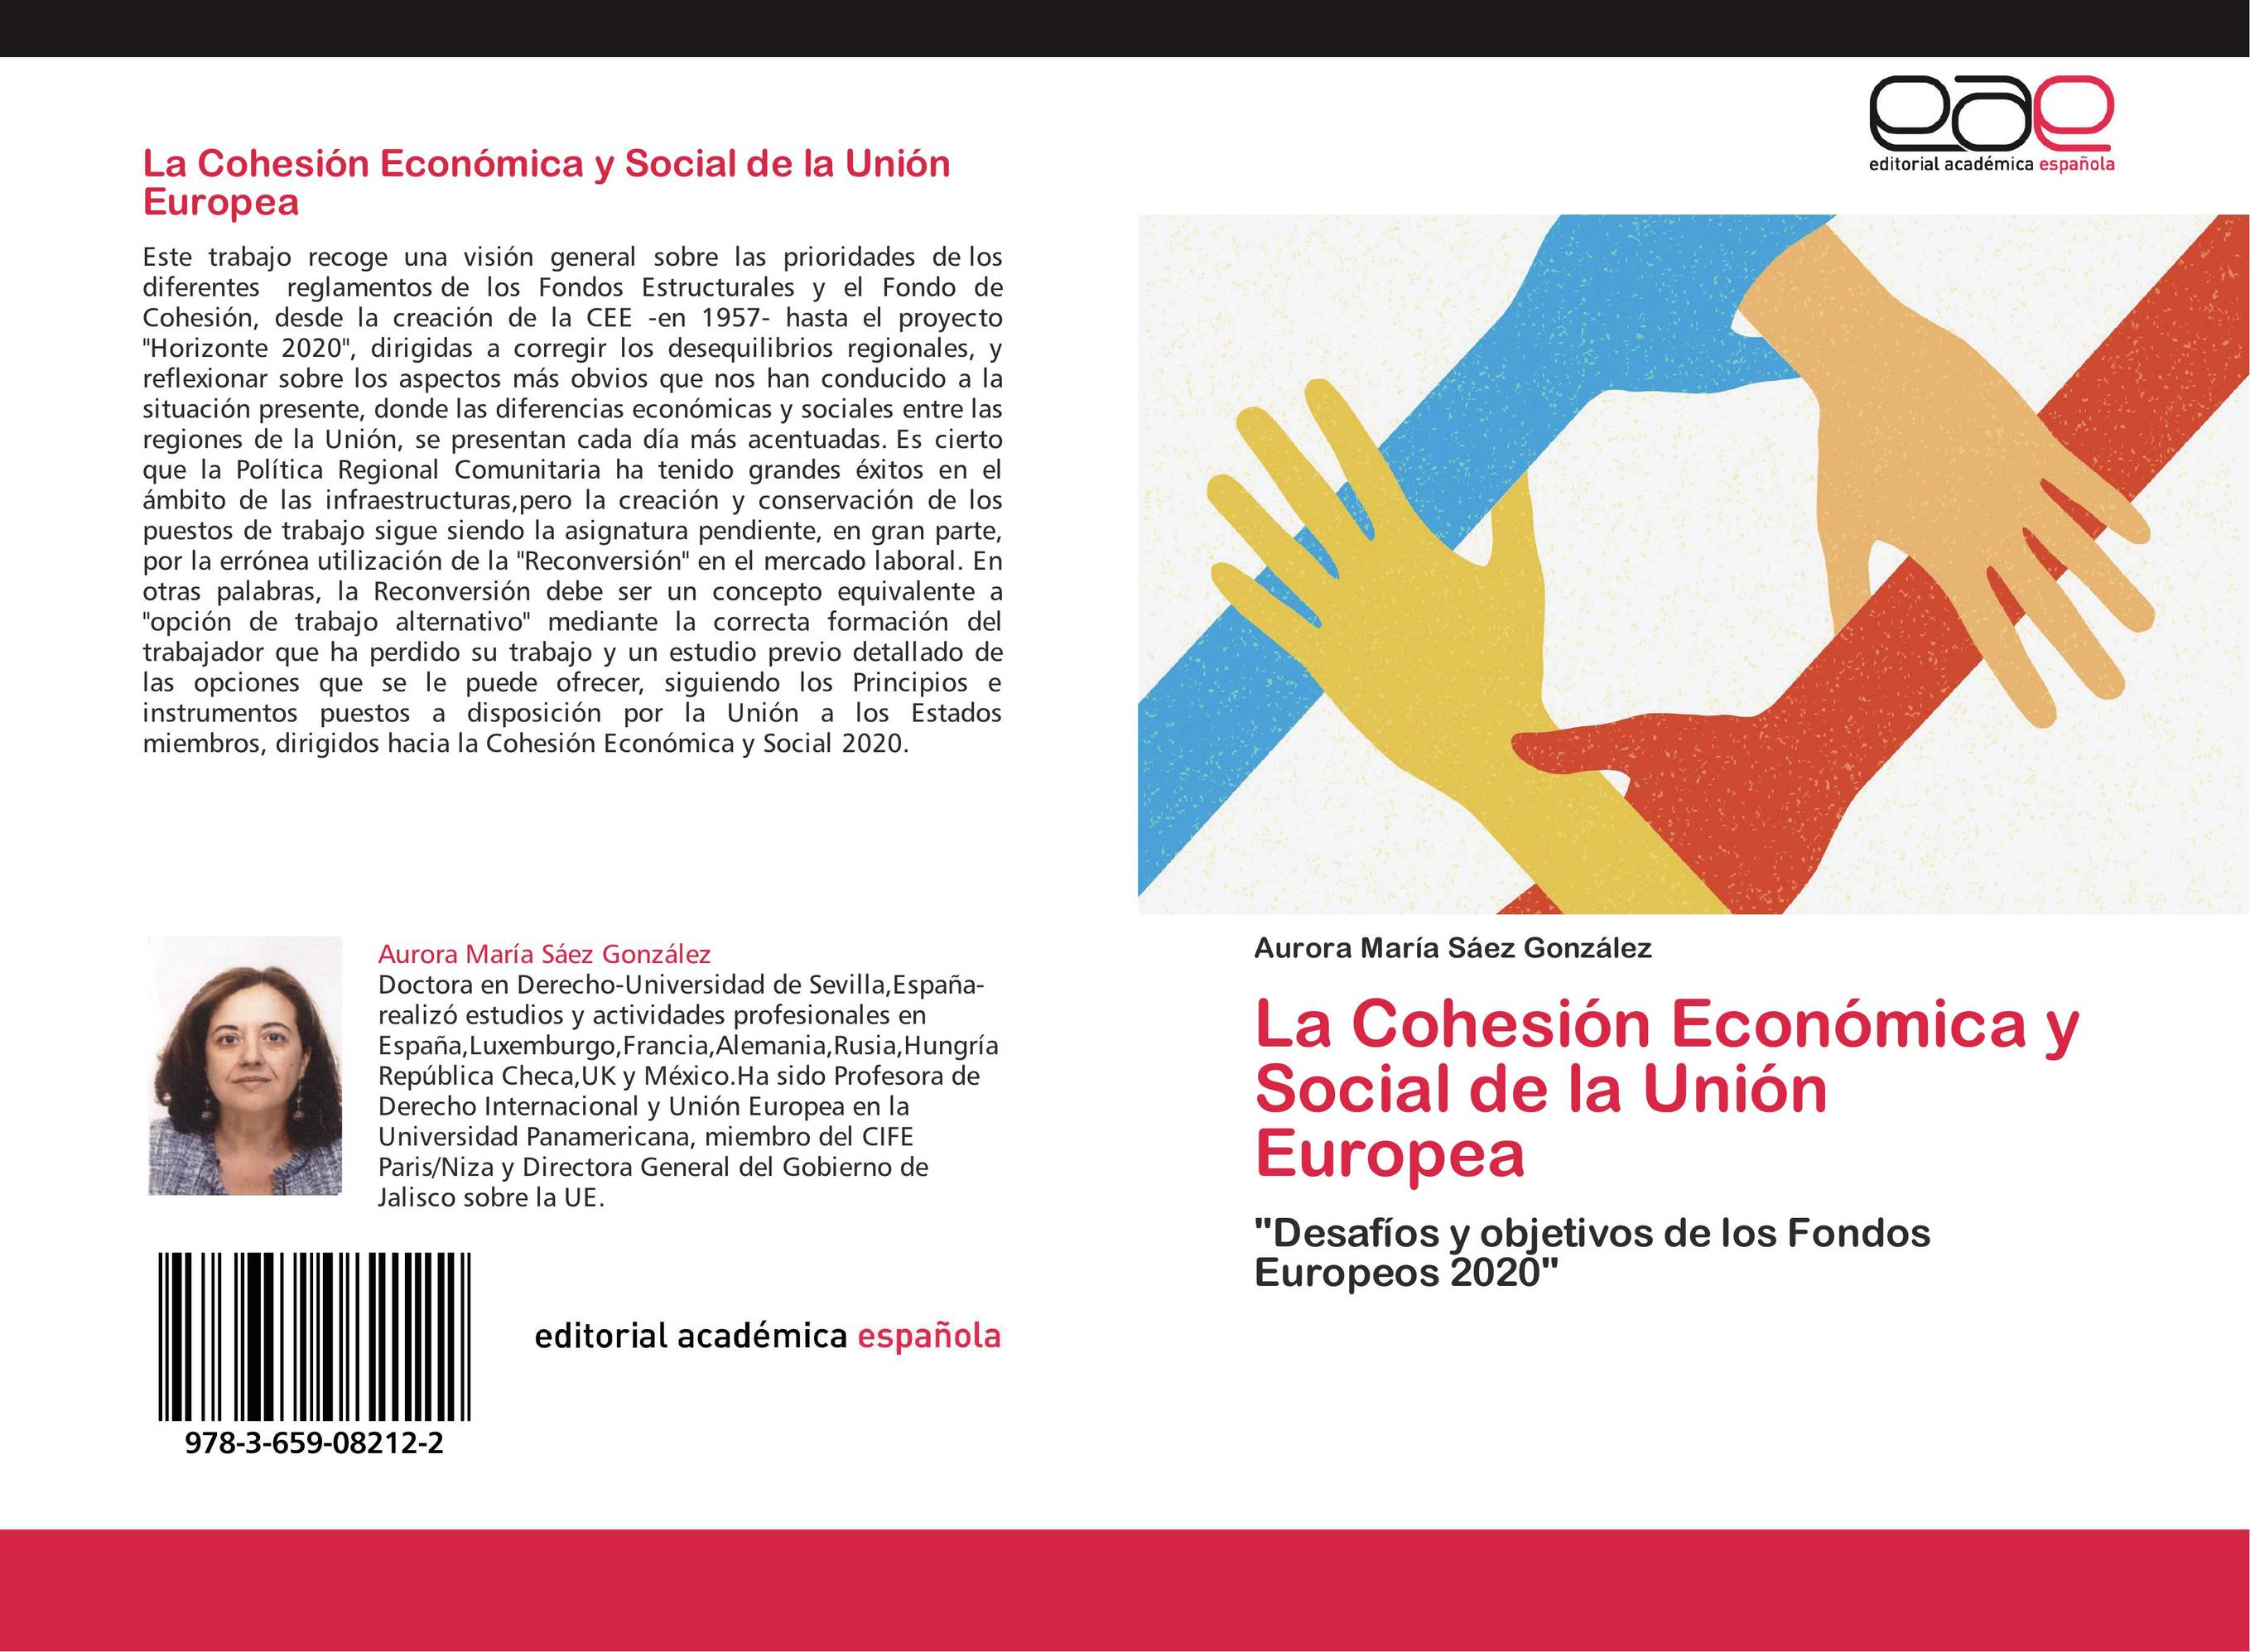 La Cohesión Económica y Social de la Unión Europea